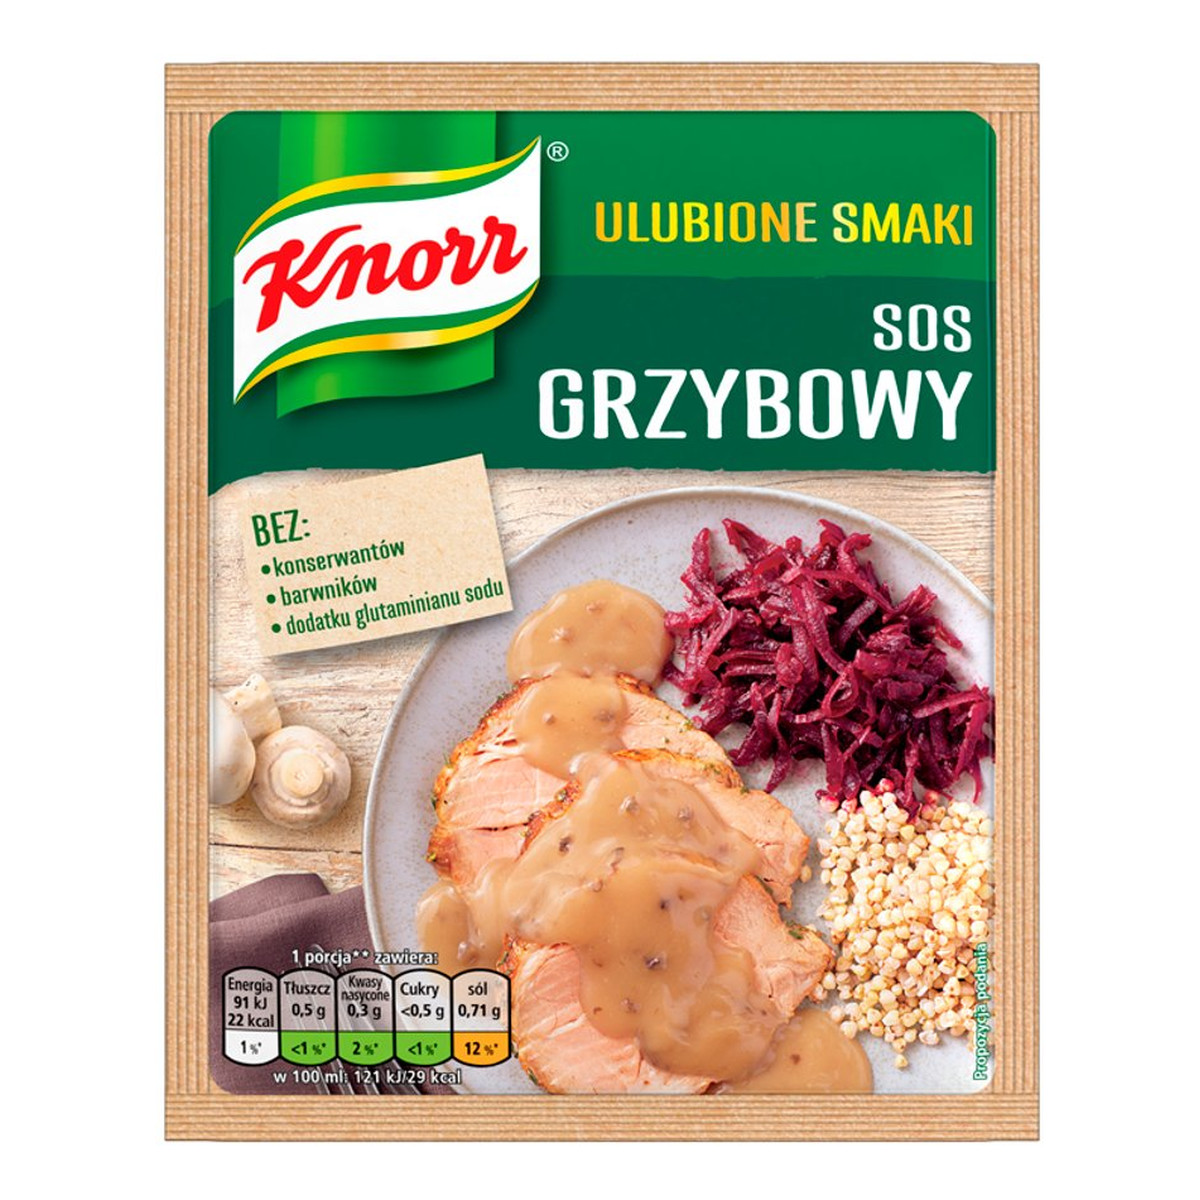 Knorr Ulubione Smaki sos grzybowy 24g